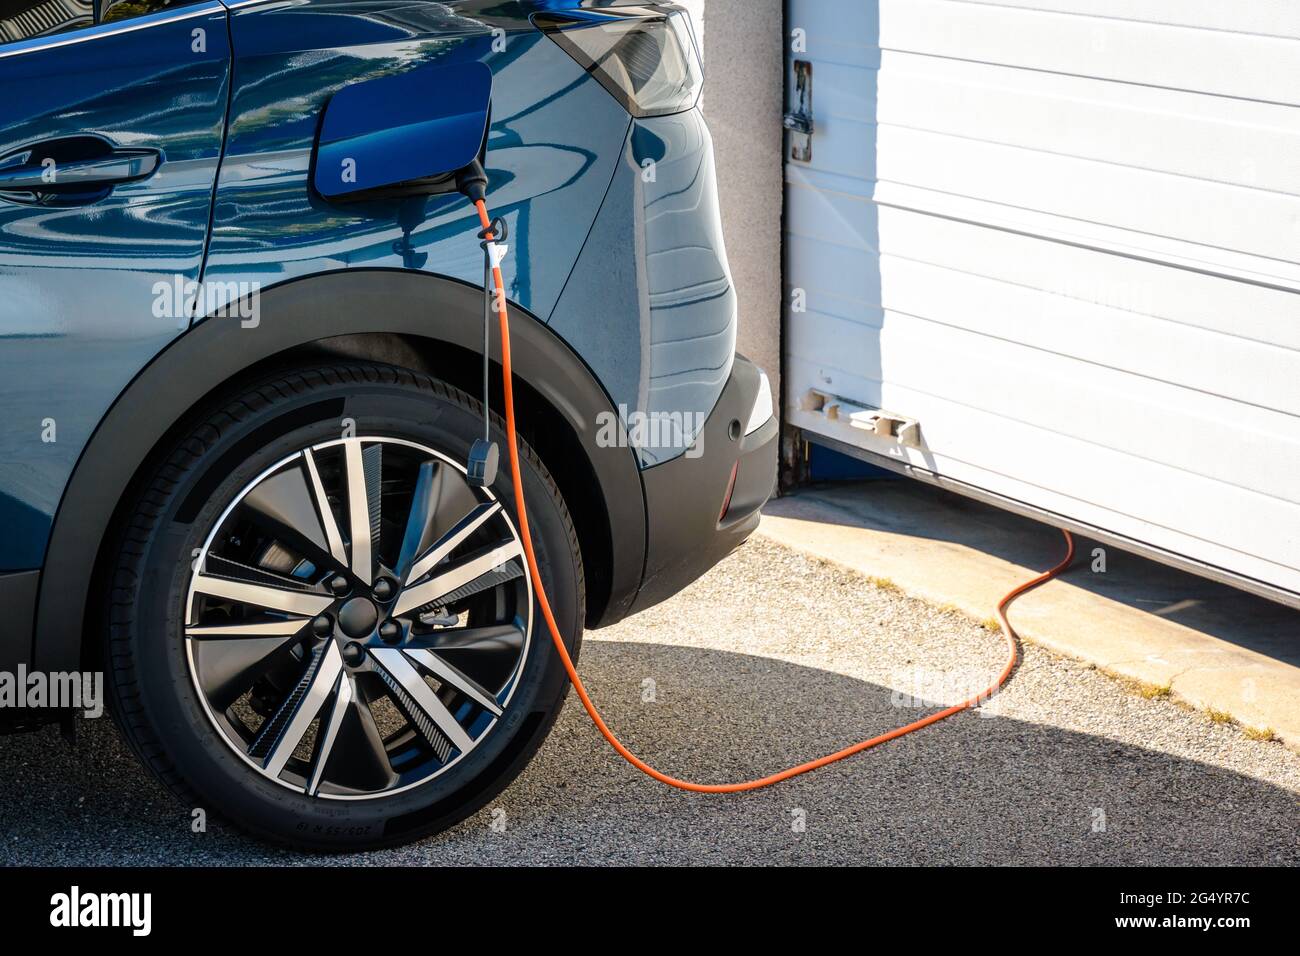 Câble de recharge pour voiture électrique et hybride Plug-in